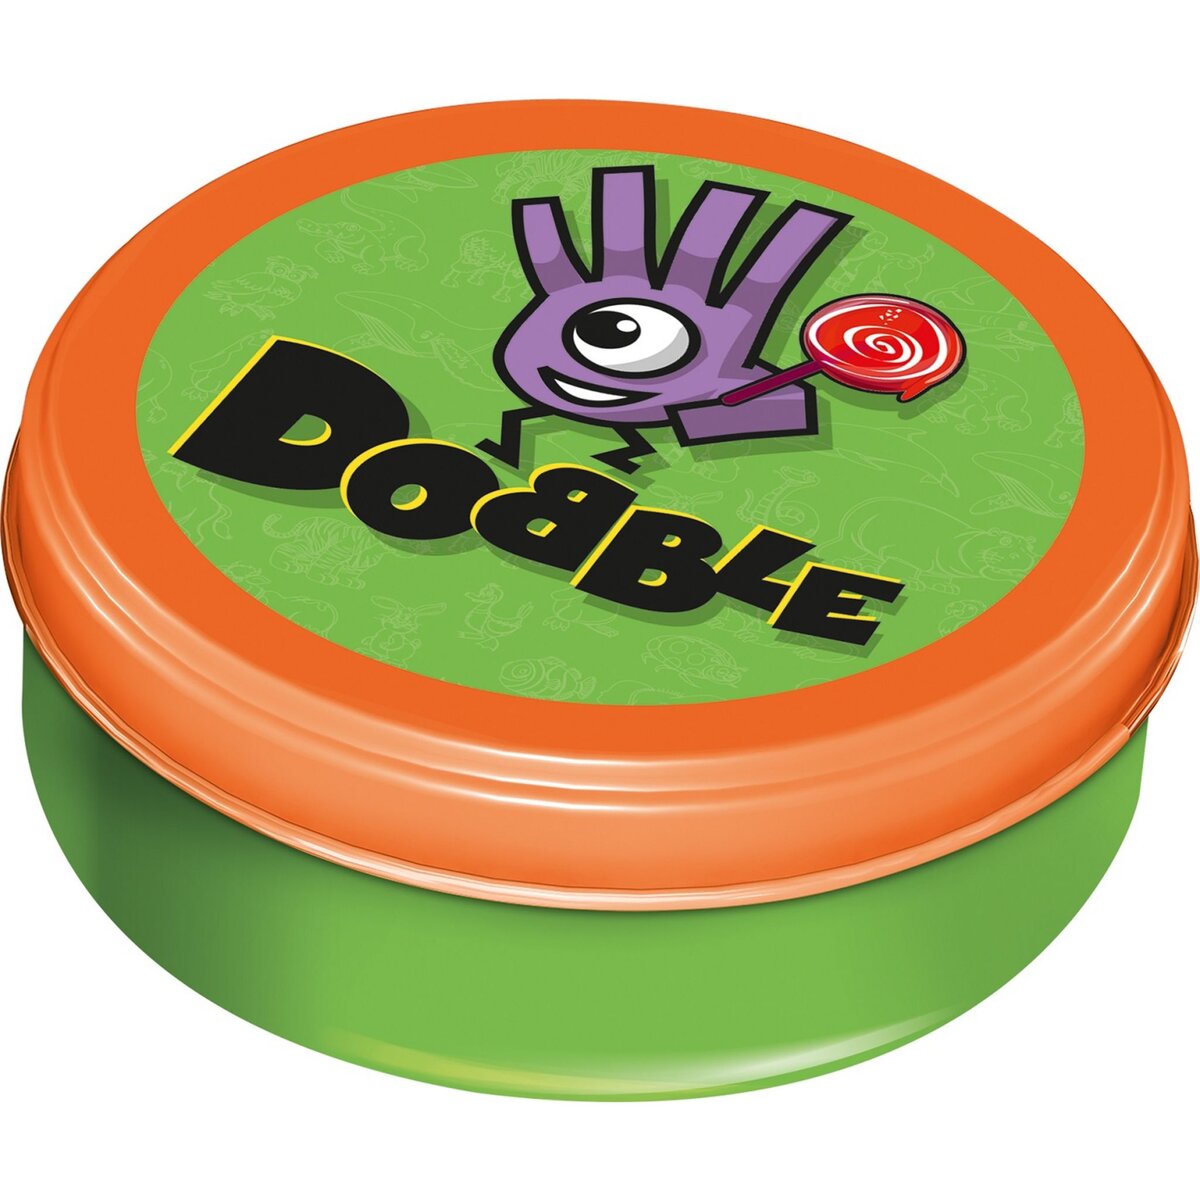 Dobble kids - La Rivière Des Jeux - 4 €